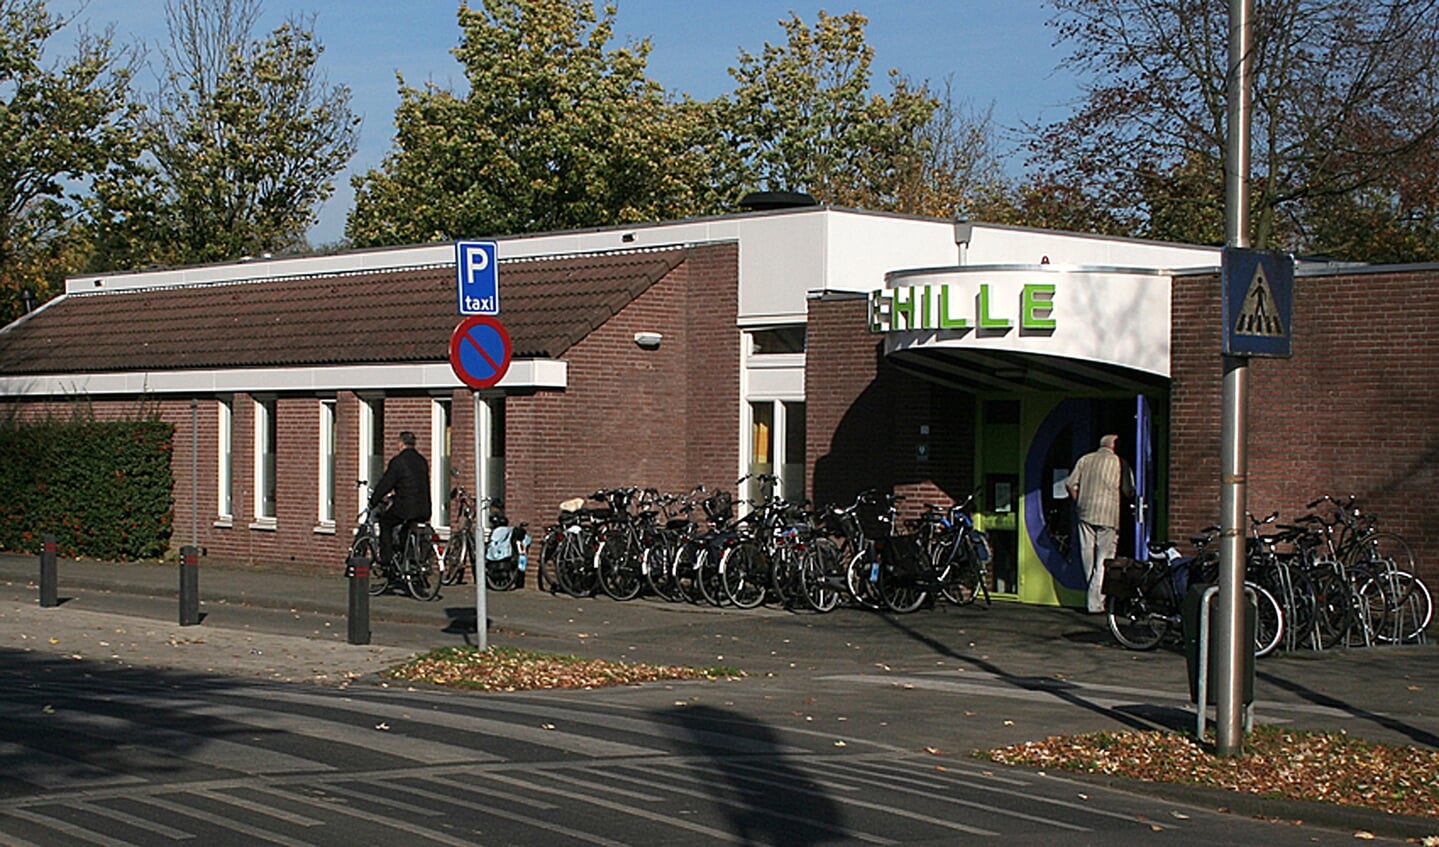 Wijkcentrum De Hille, de website is: https://wijkcentrumdehille.nl/